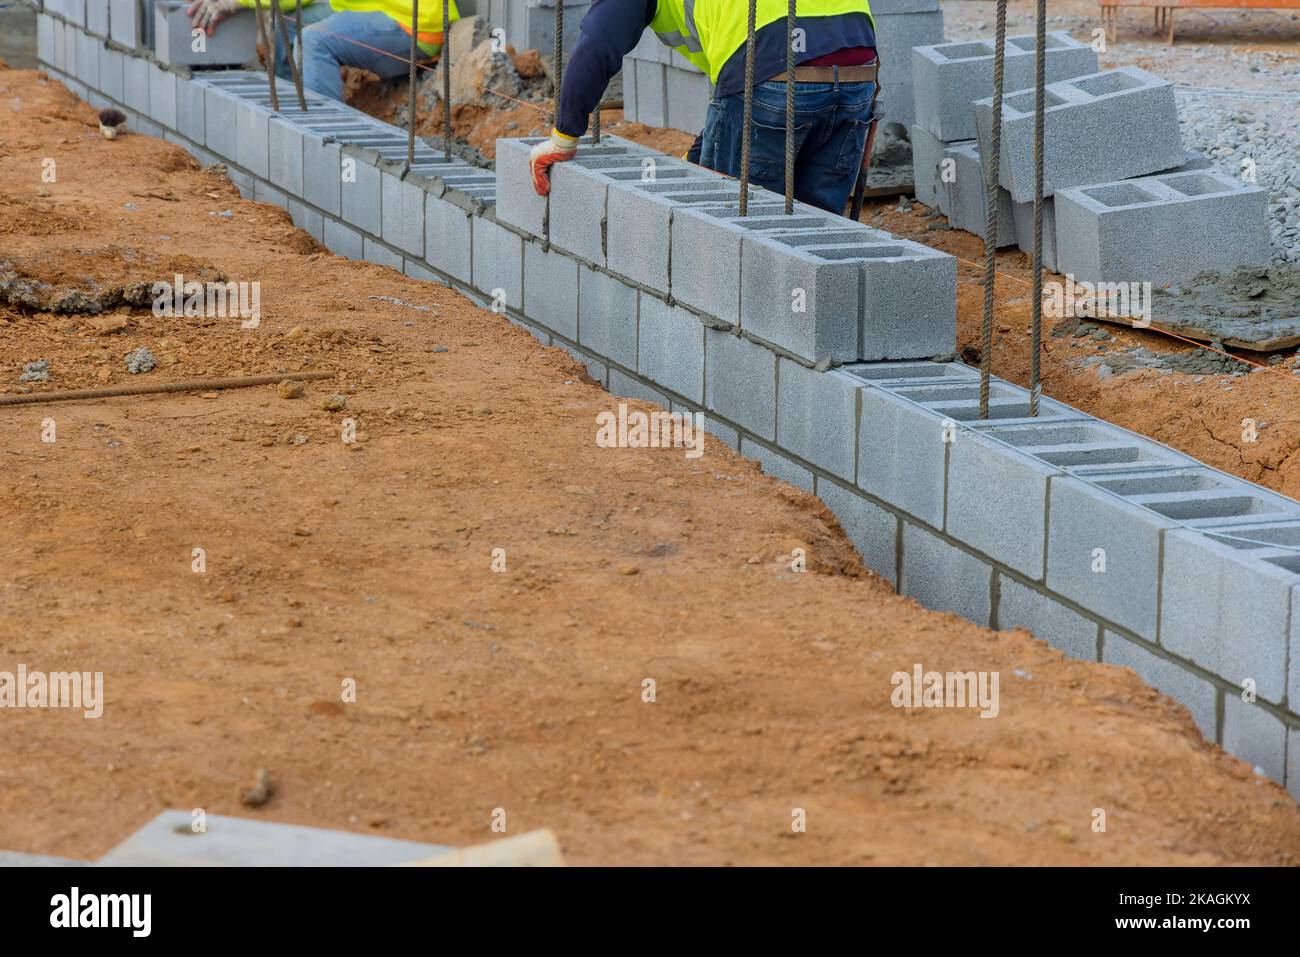 Un employé de la société de construction de briques mettant en place une autre rangée de blocs de ciment sur le sol Banque D'Images